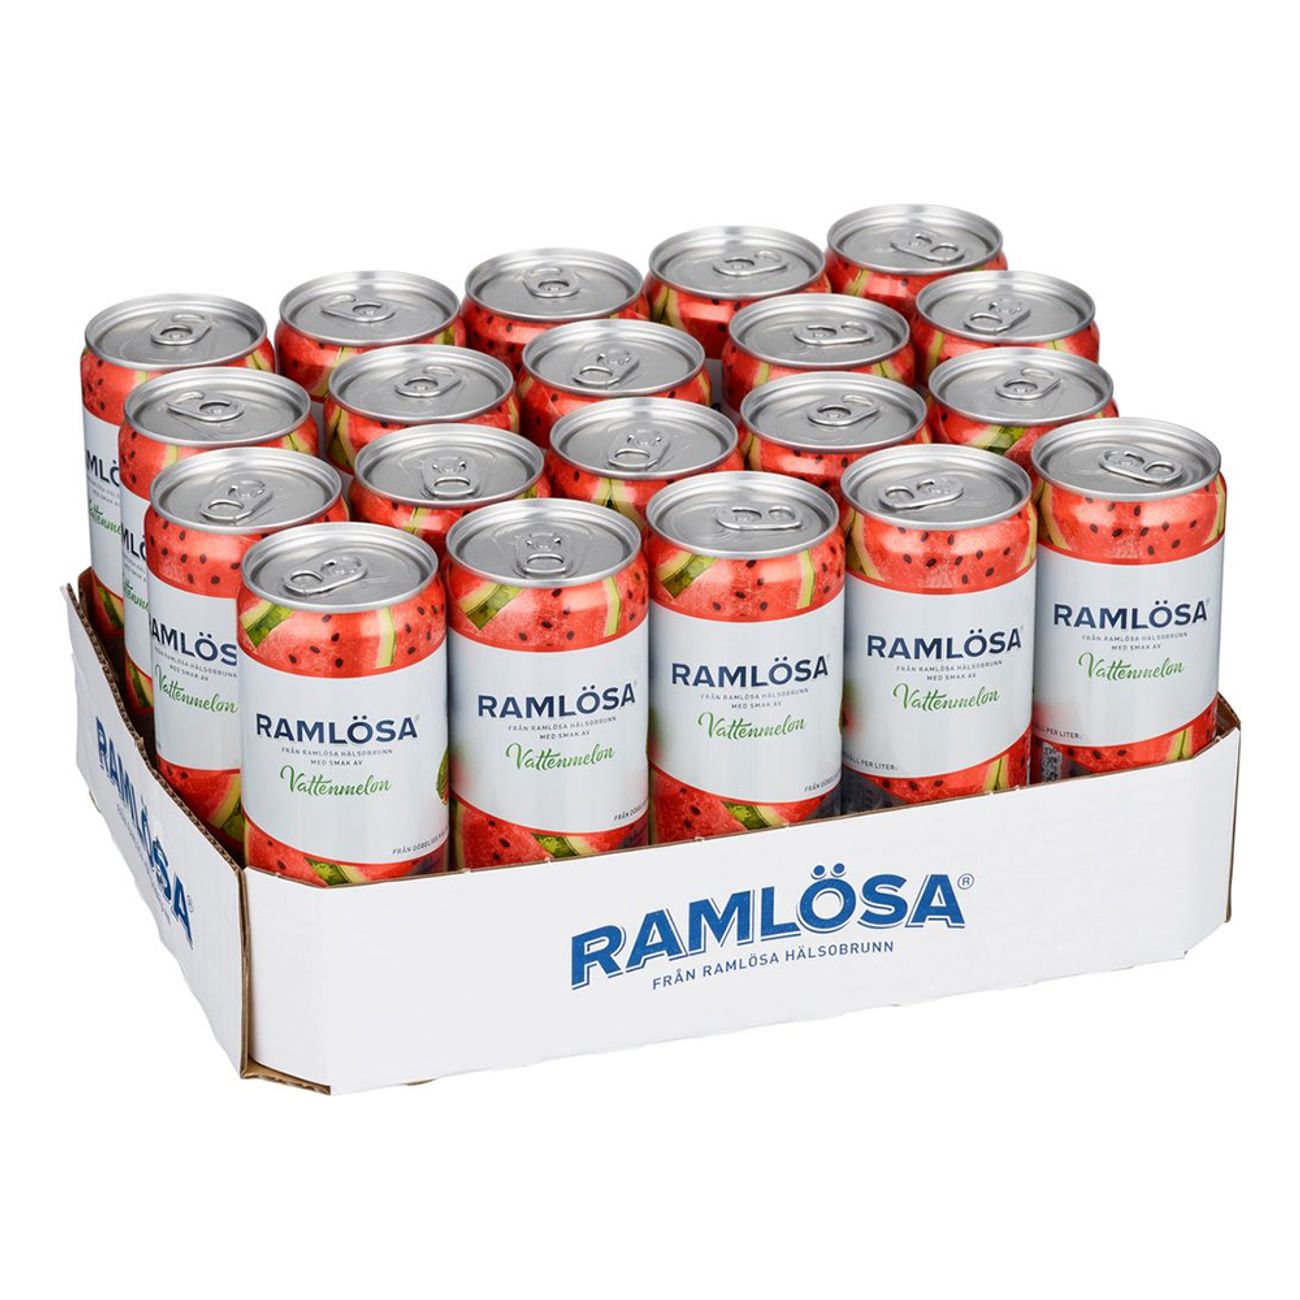 ramlosa-vattenmelon-75137-2